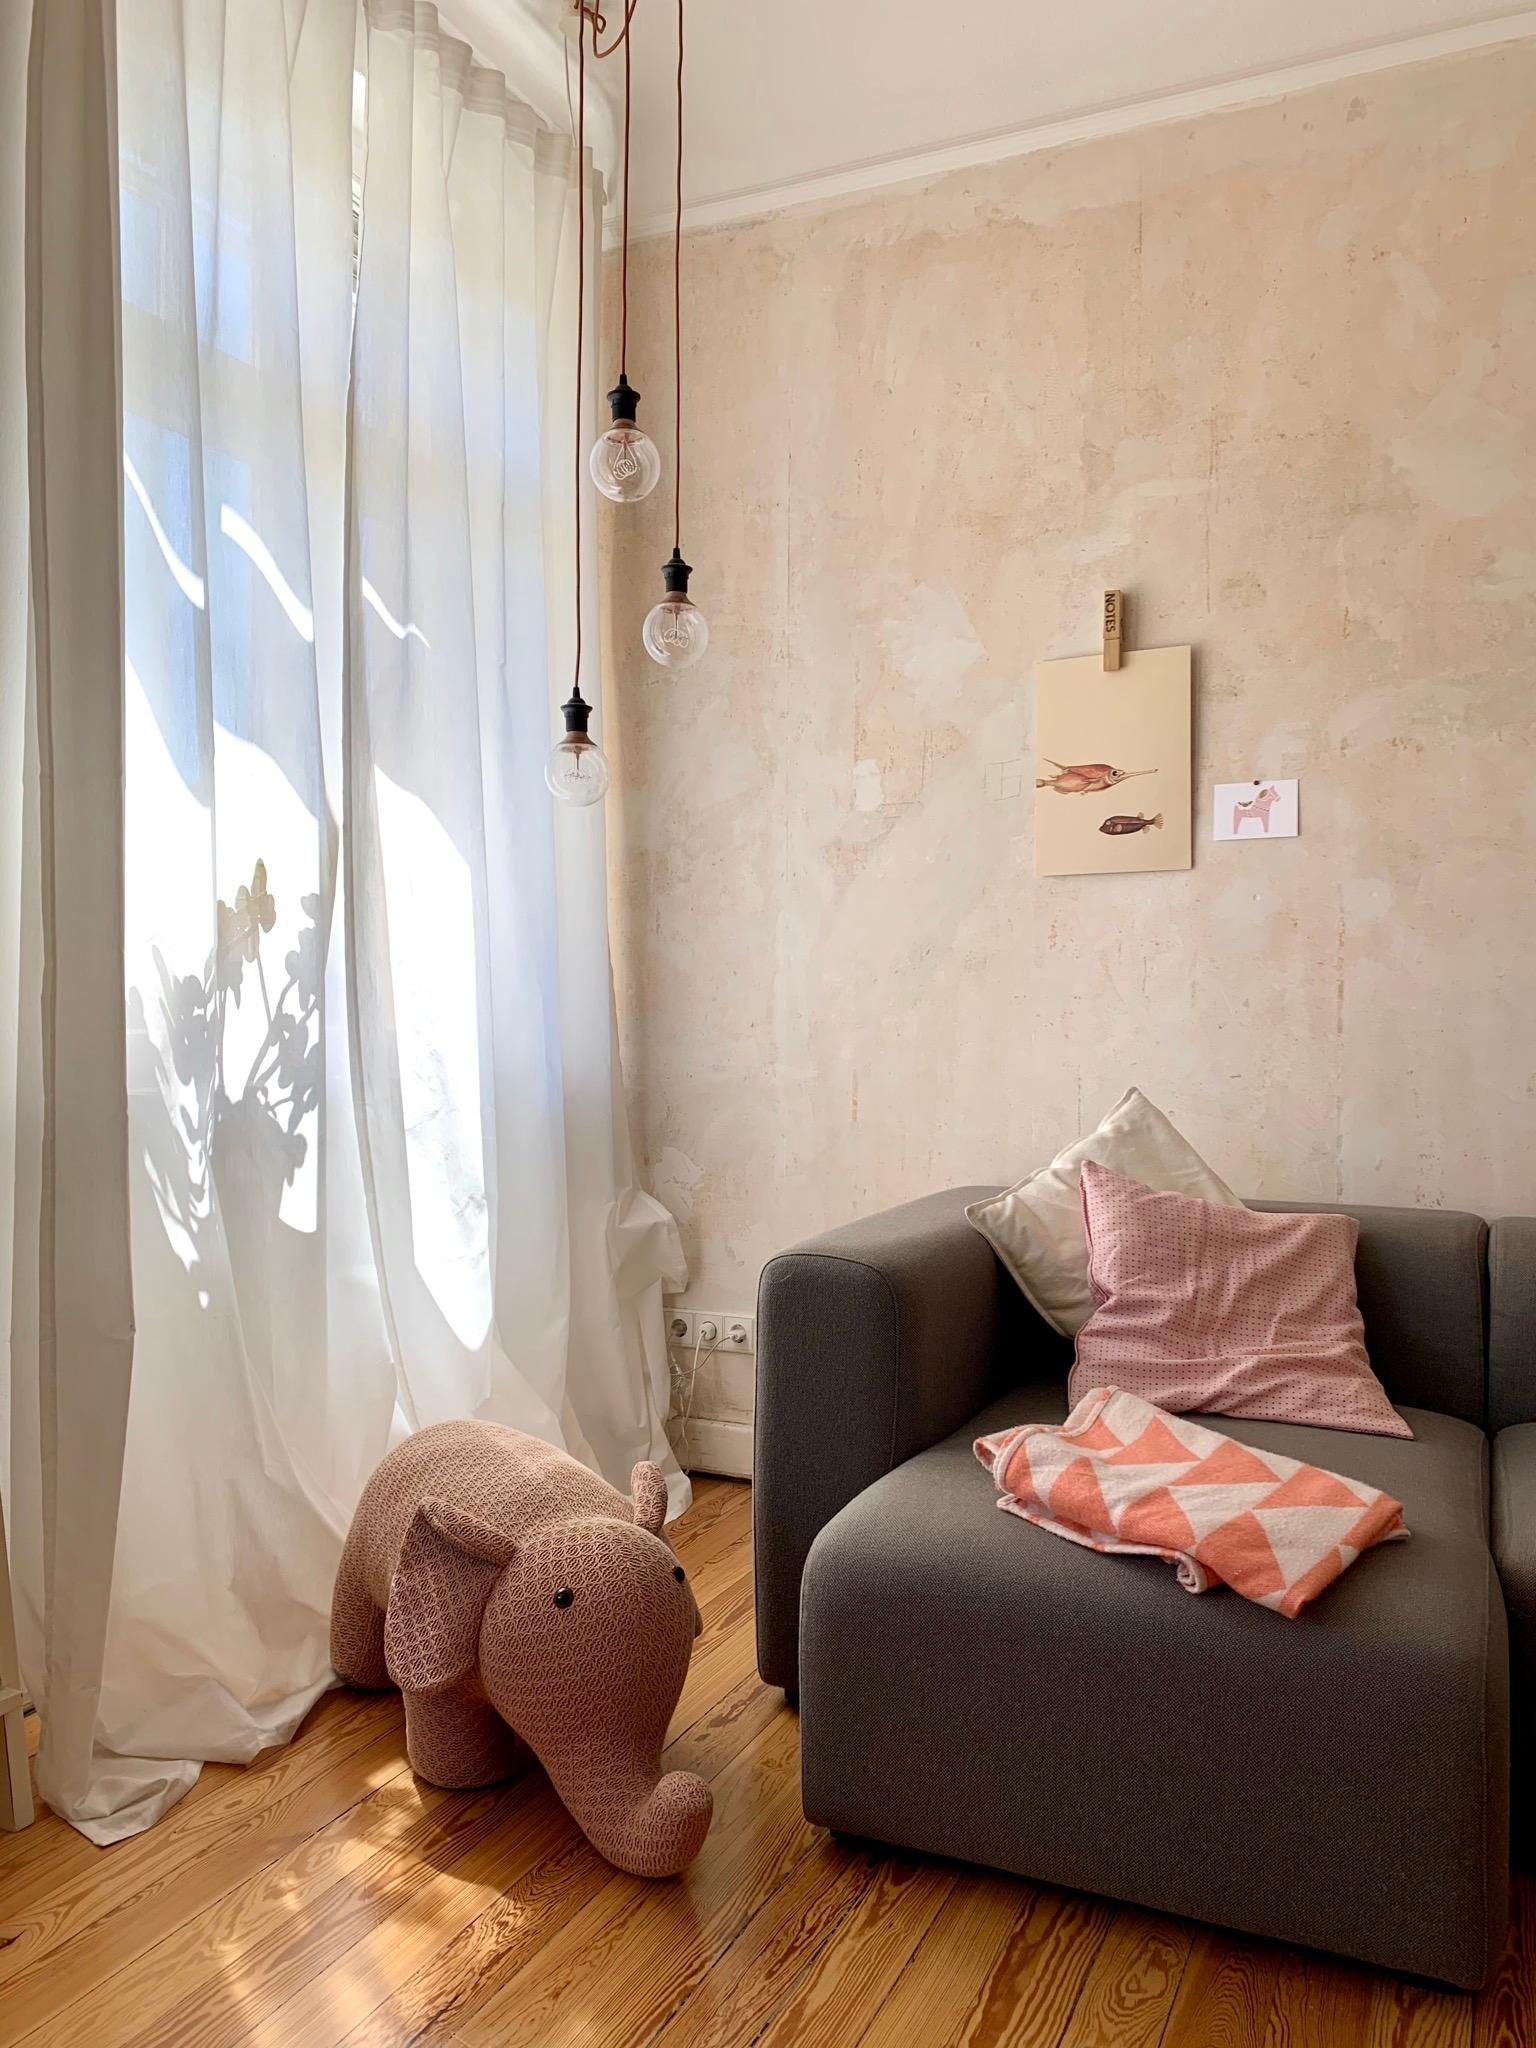 #Wohnzimmer bei #Sonnenschein #living #interior #hygge #altbauliebe #sommerzuhause #stayathome 